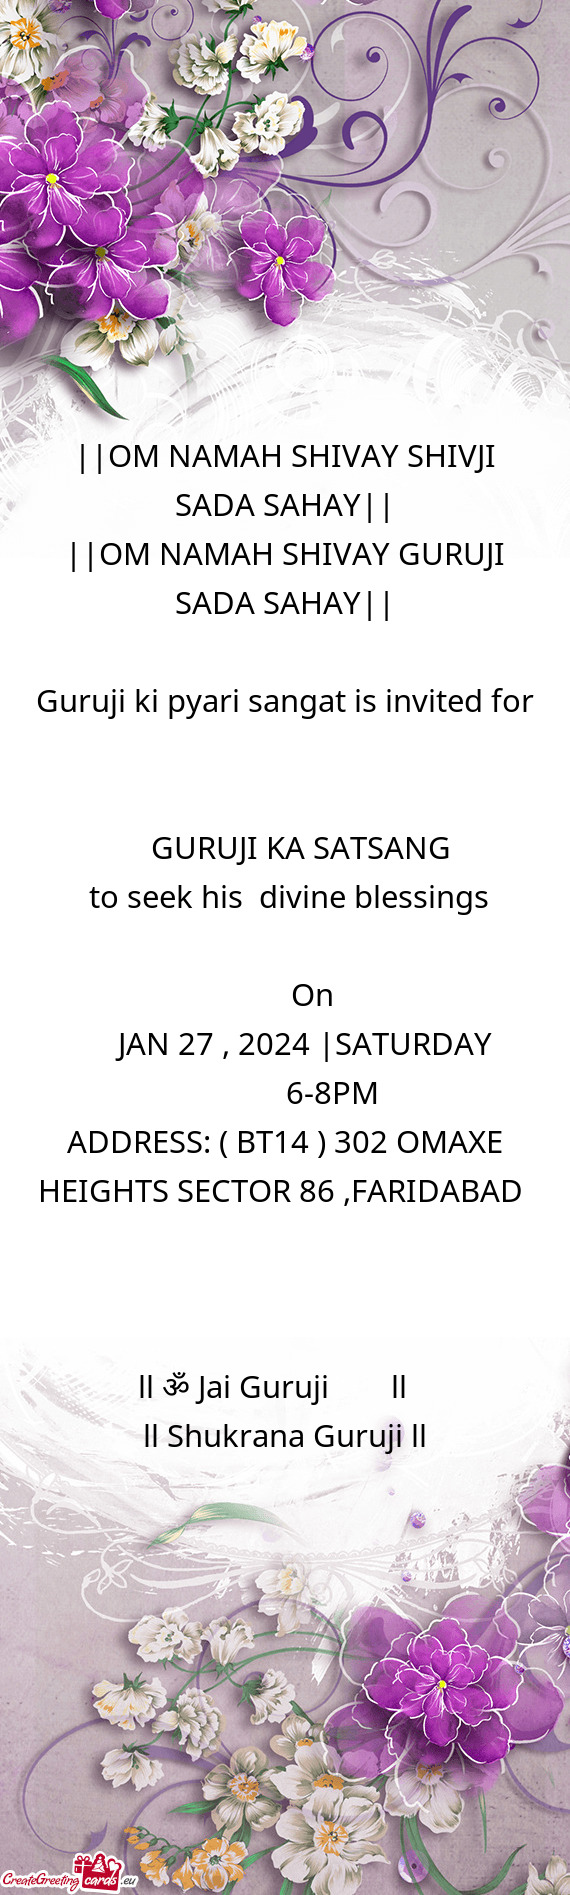 Guruji ki pyari sangat is invited for